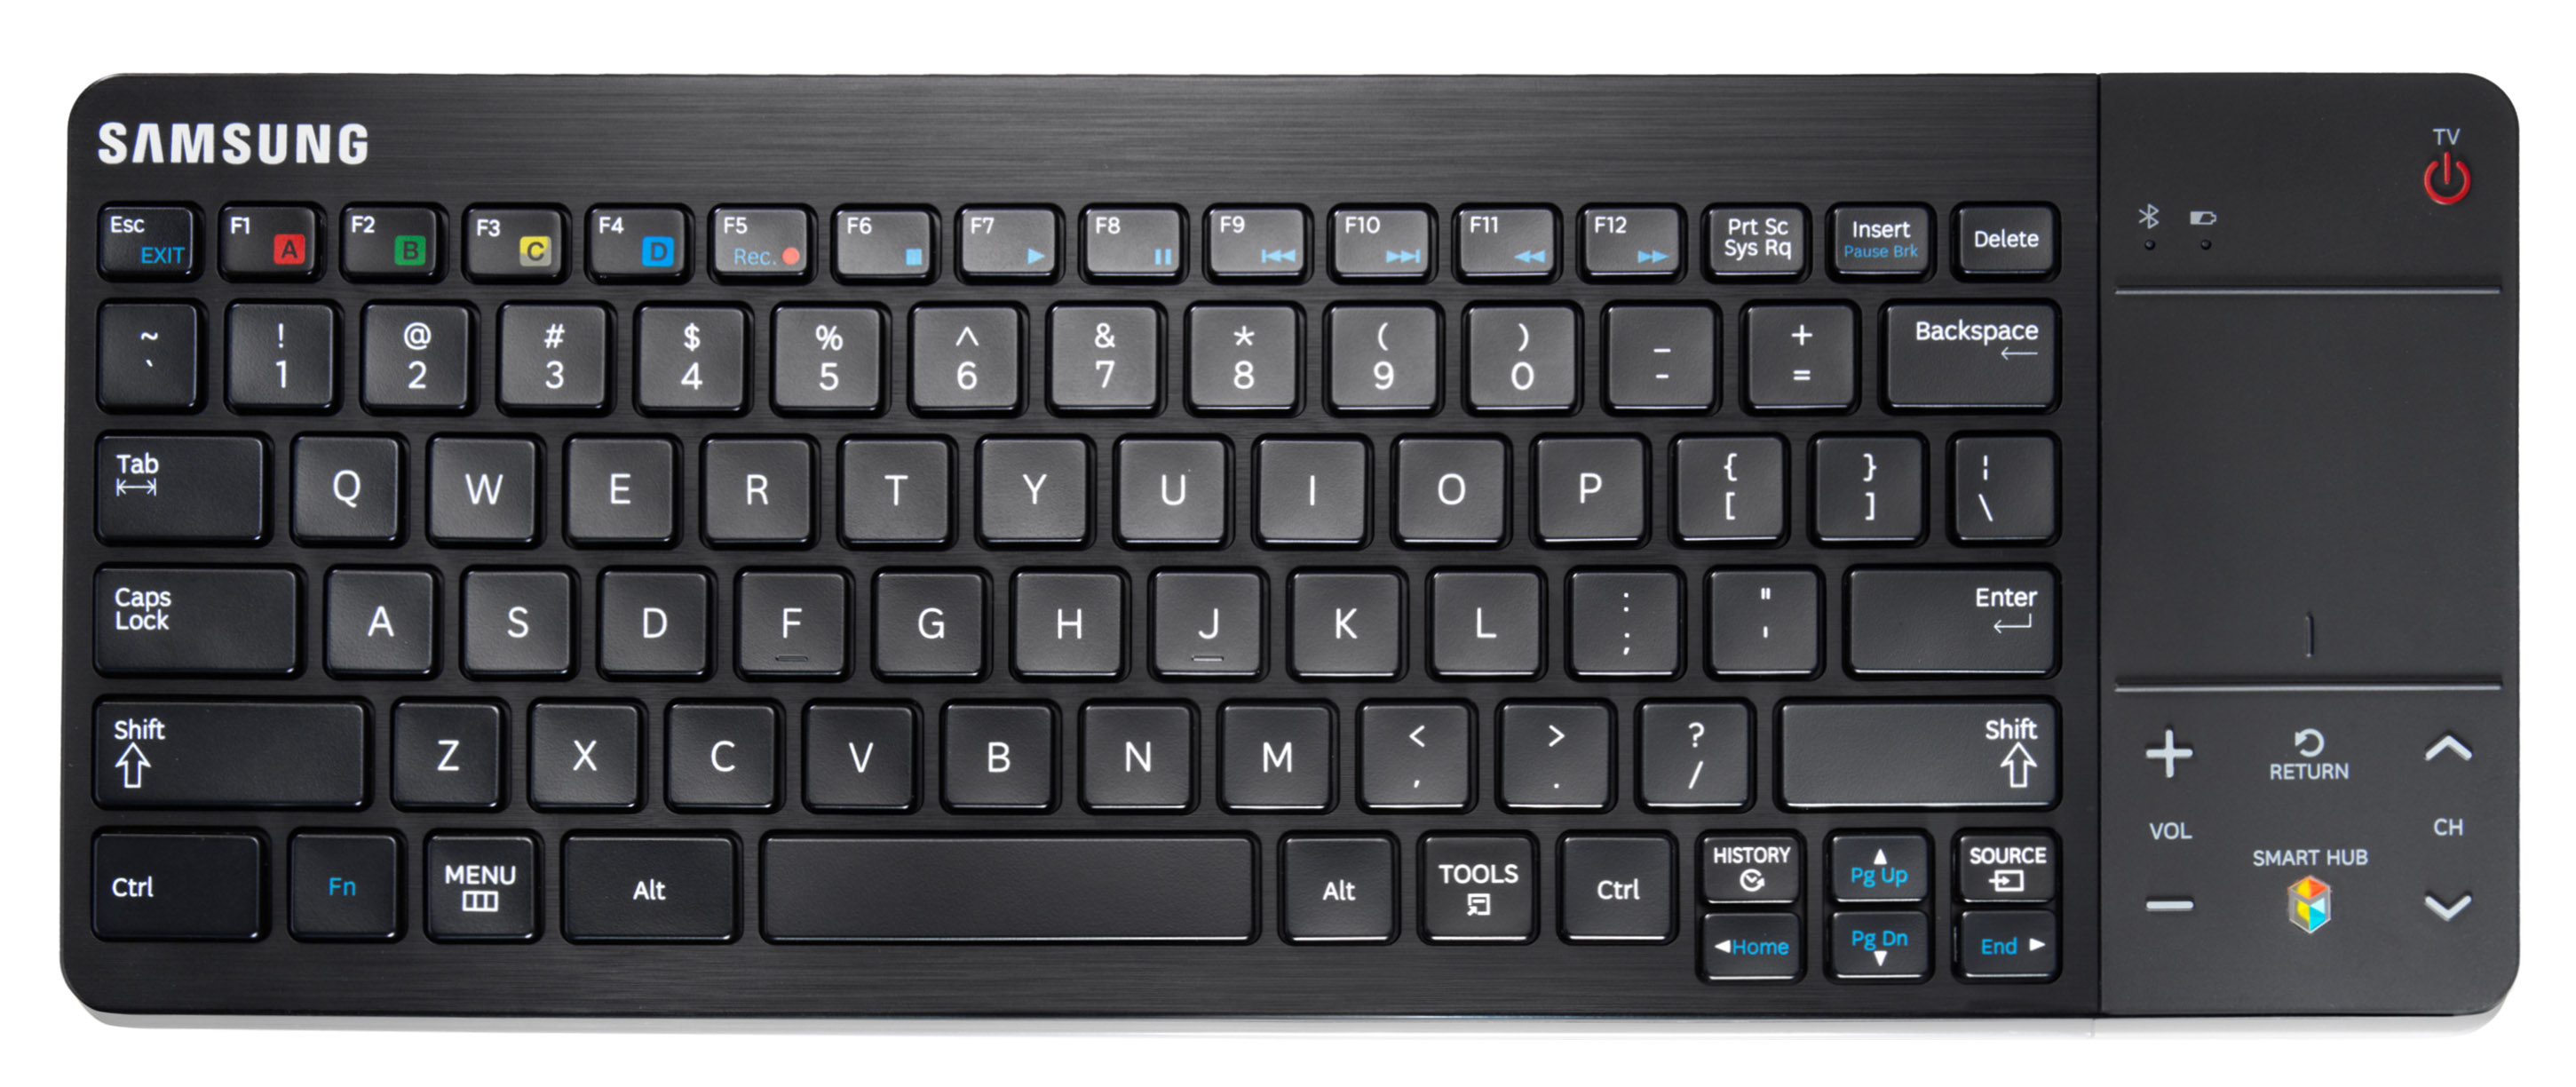 VG-KBD1000/XU Samsung Keyboard